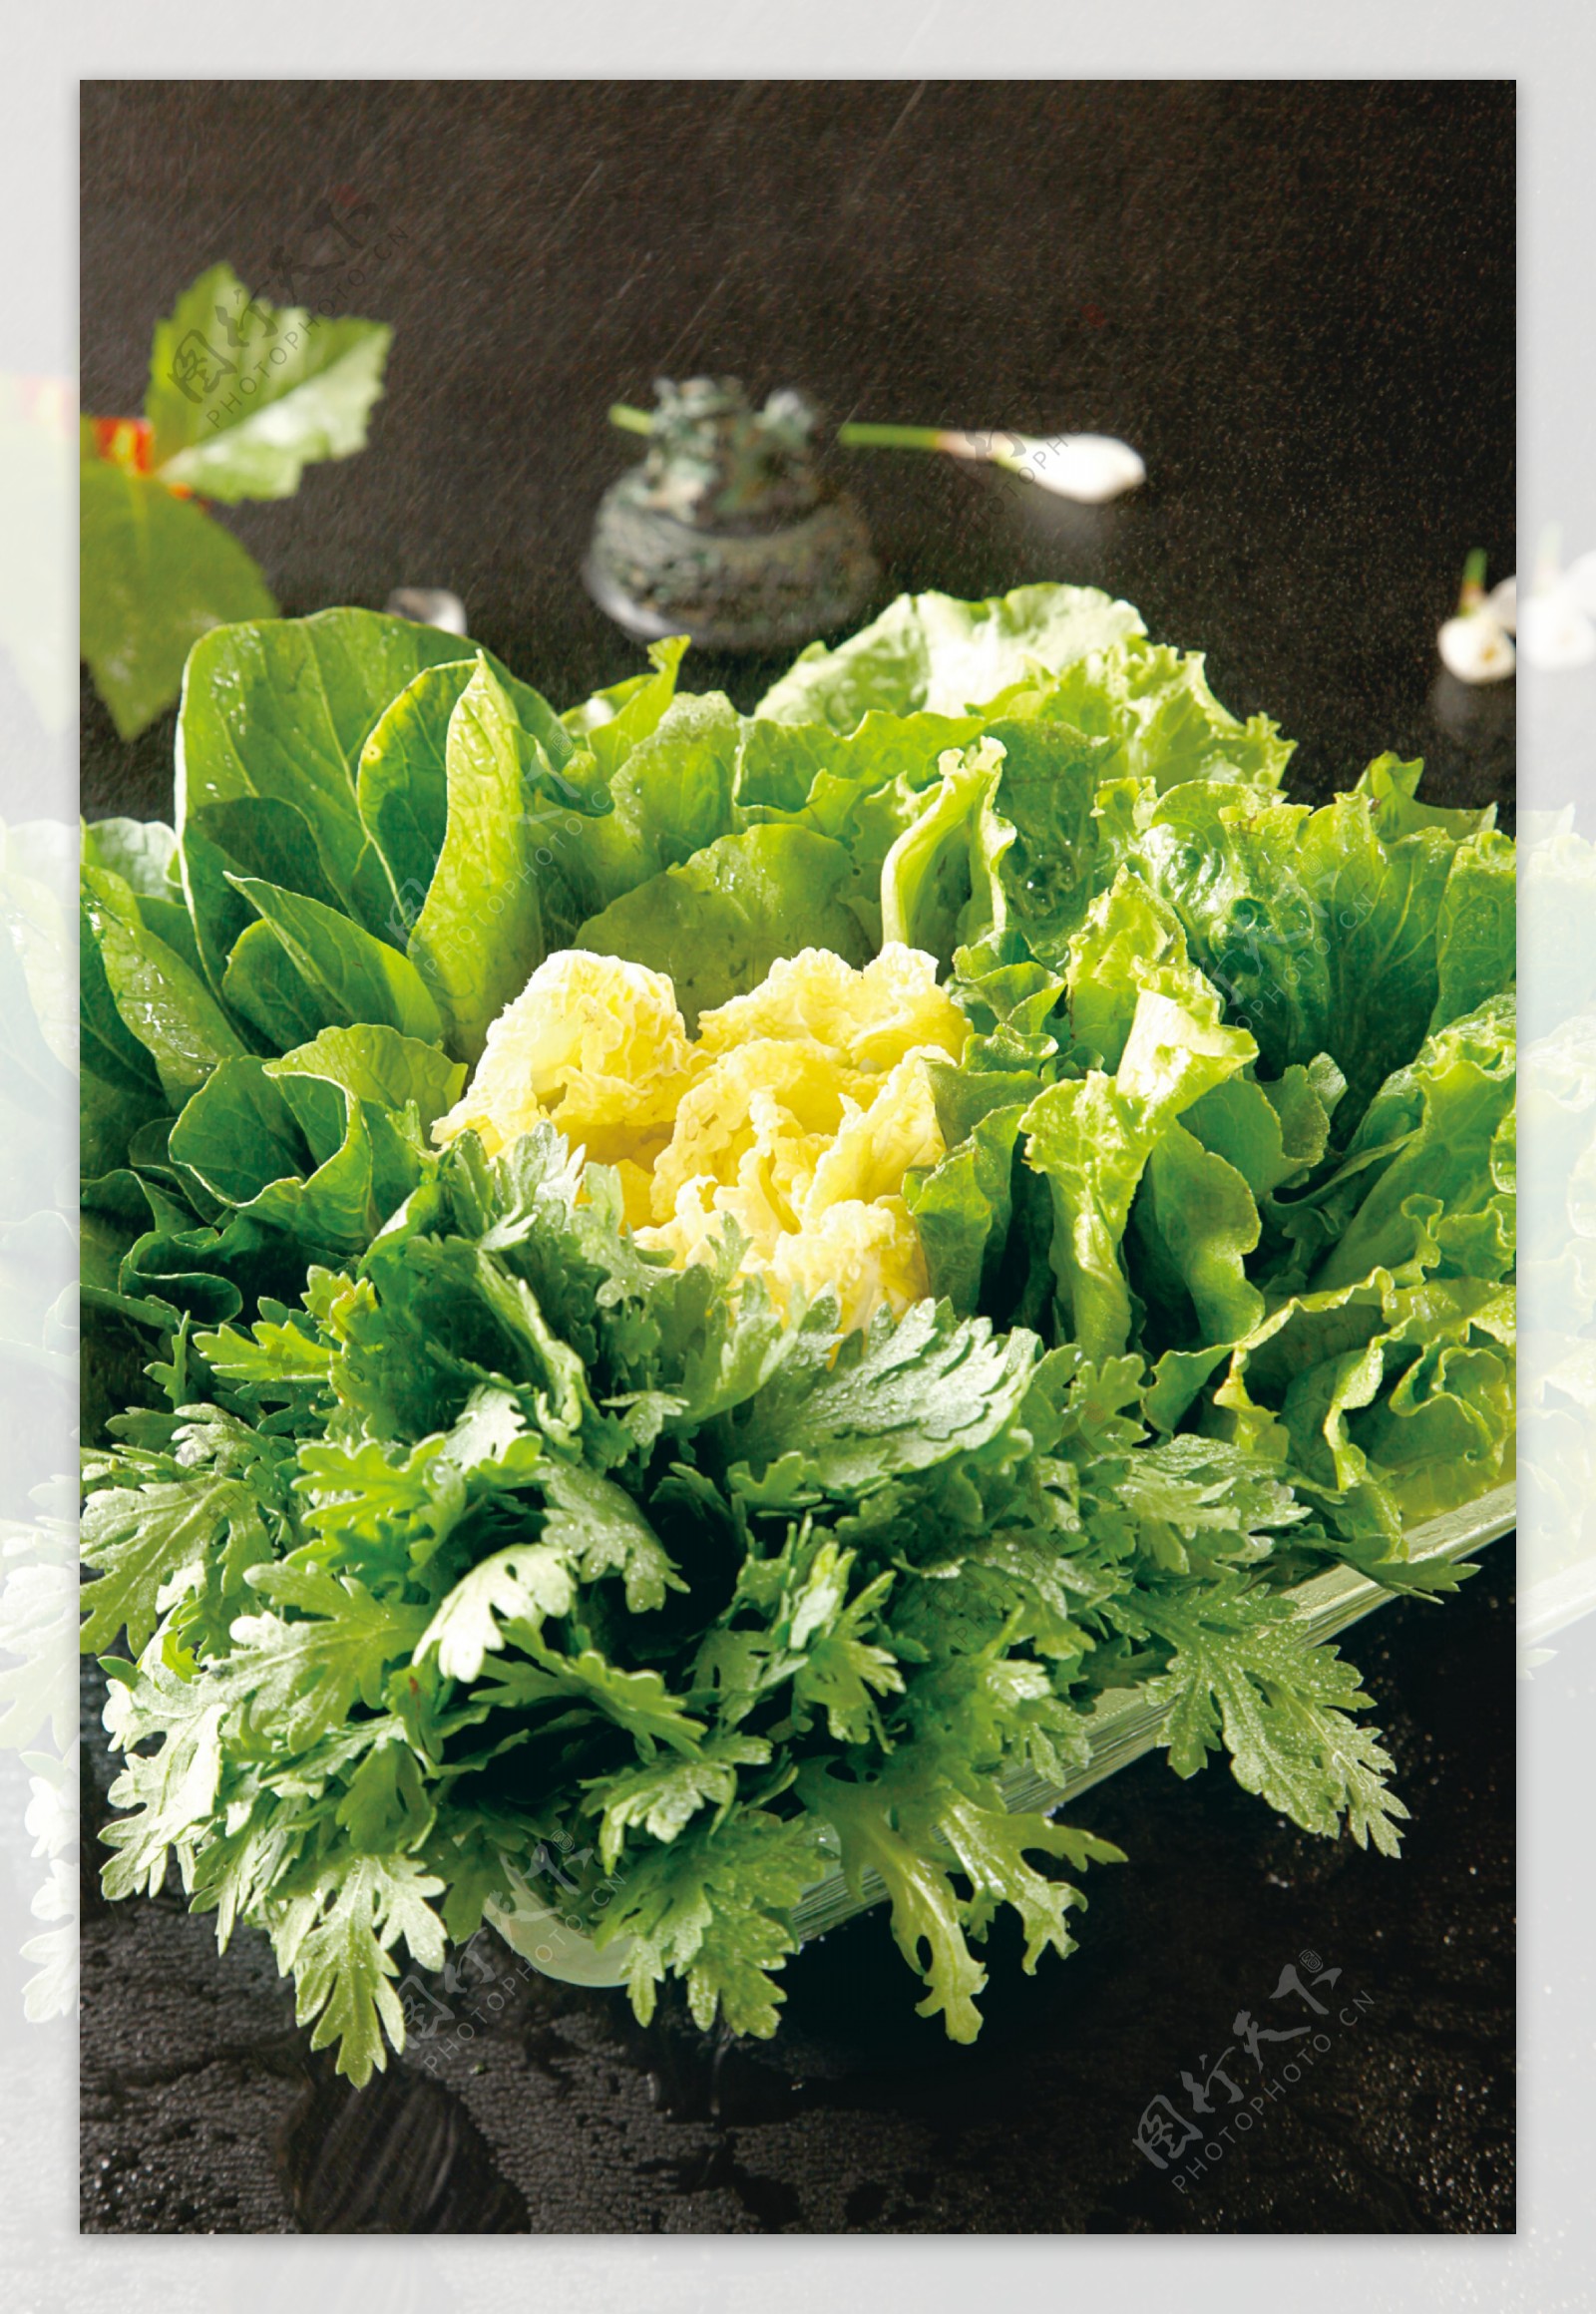 蔬菜拼盘图片素材-编号40270223-图行天下